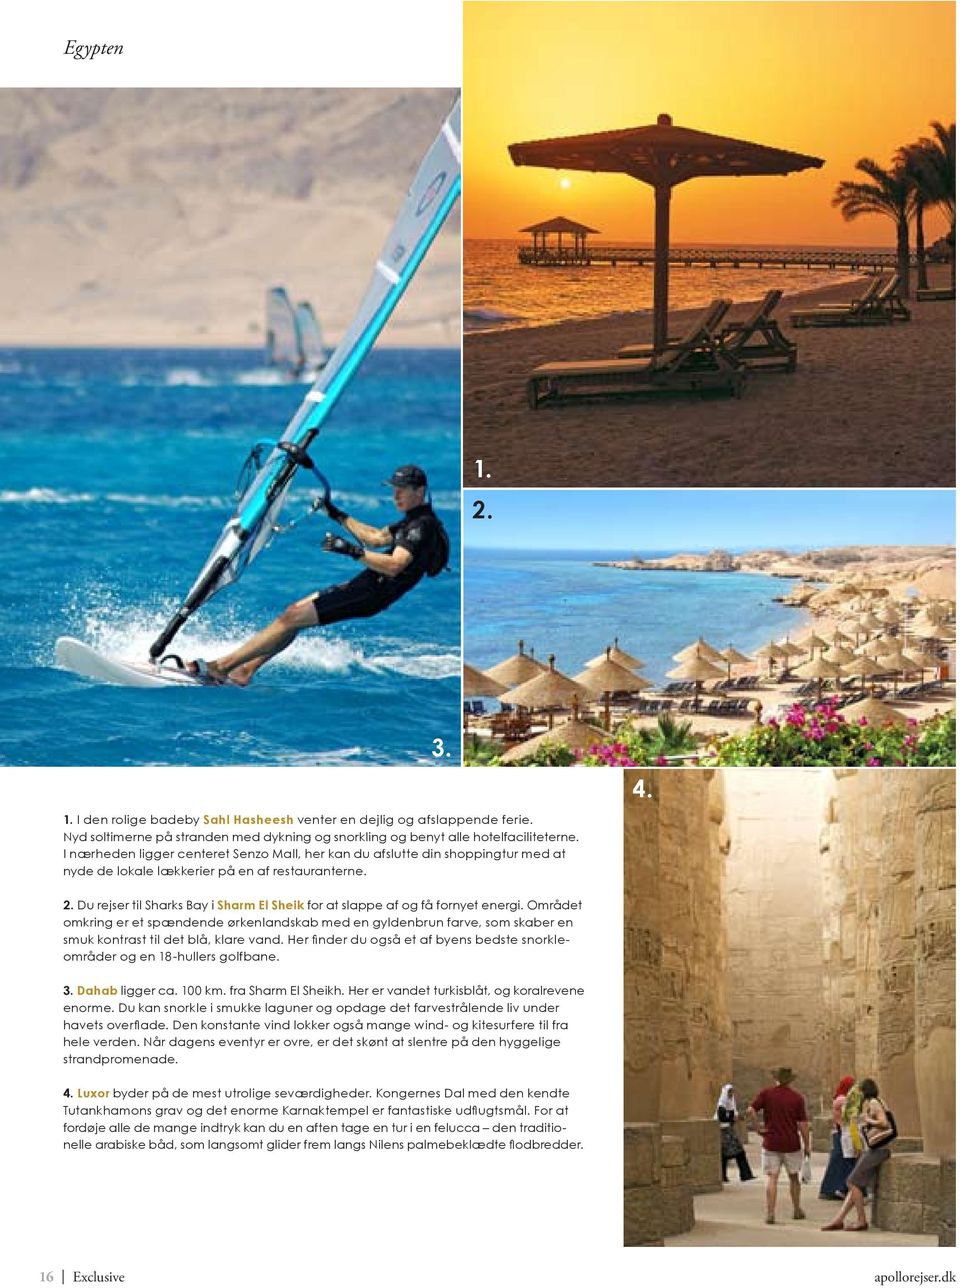 Du rejser til Sharks Bay i Sharm El Sheik for at slappe af og få fornyet energi.